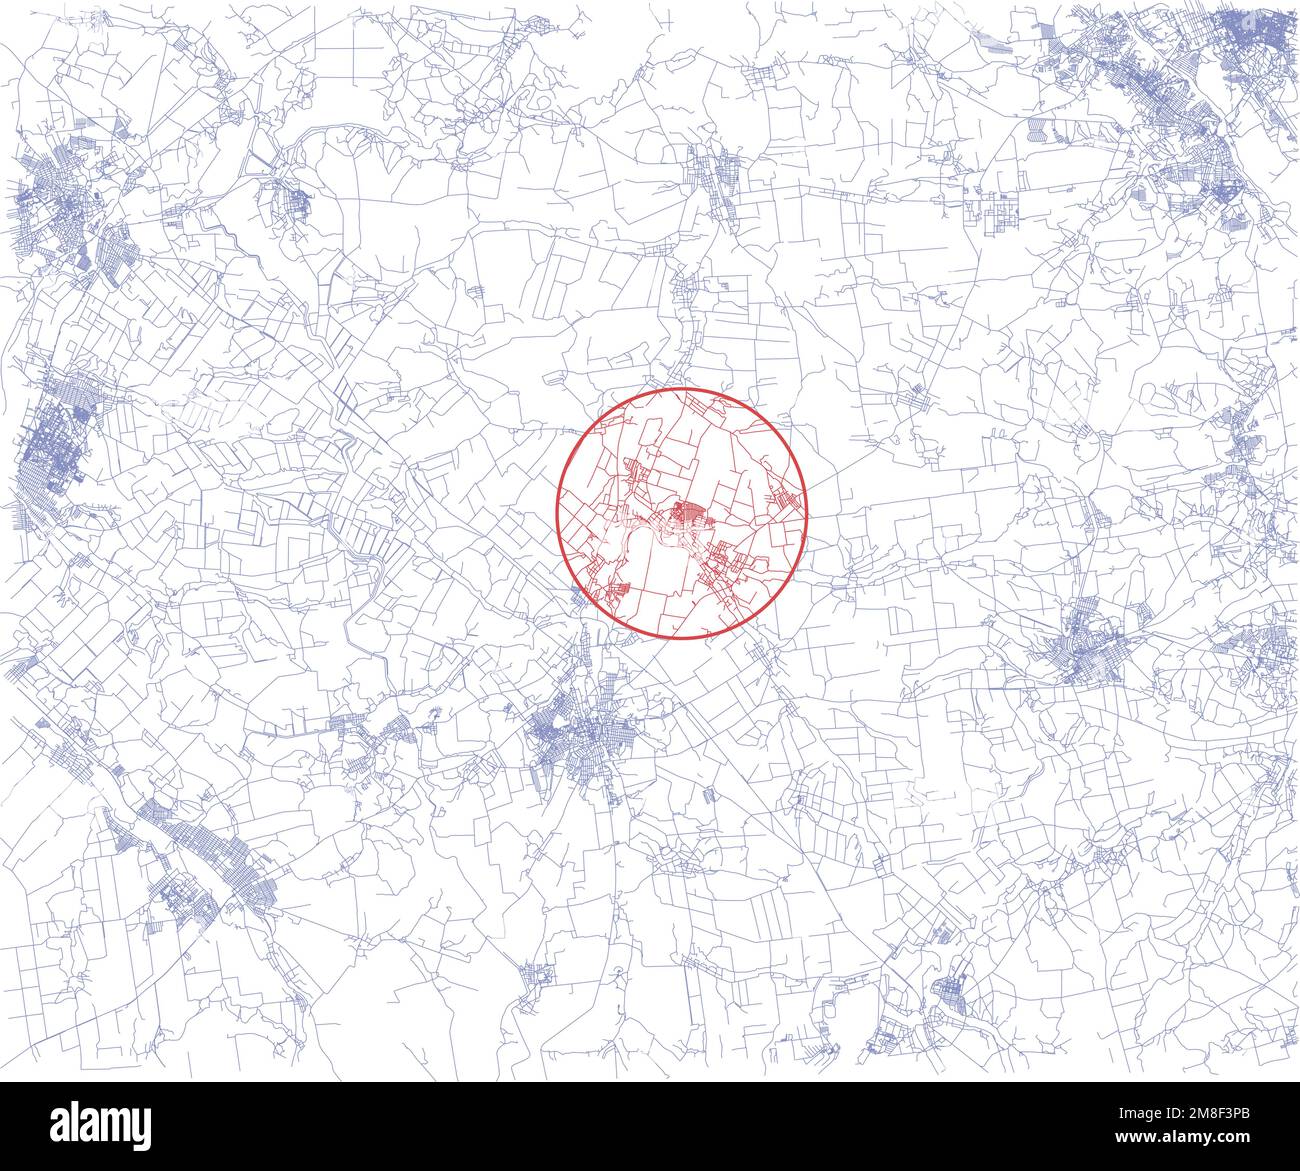 Vue satellite de Soledar, oblast de Donetsk, Ukraine. Carte. Rues et villes près de Soledar. Front de guerre entre l'Ukraine et la Russie Illustration de Vecteur